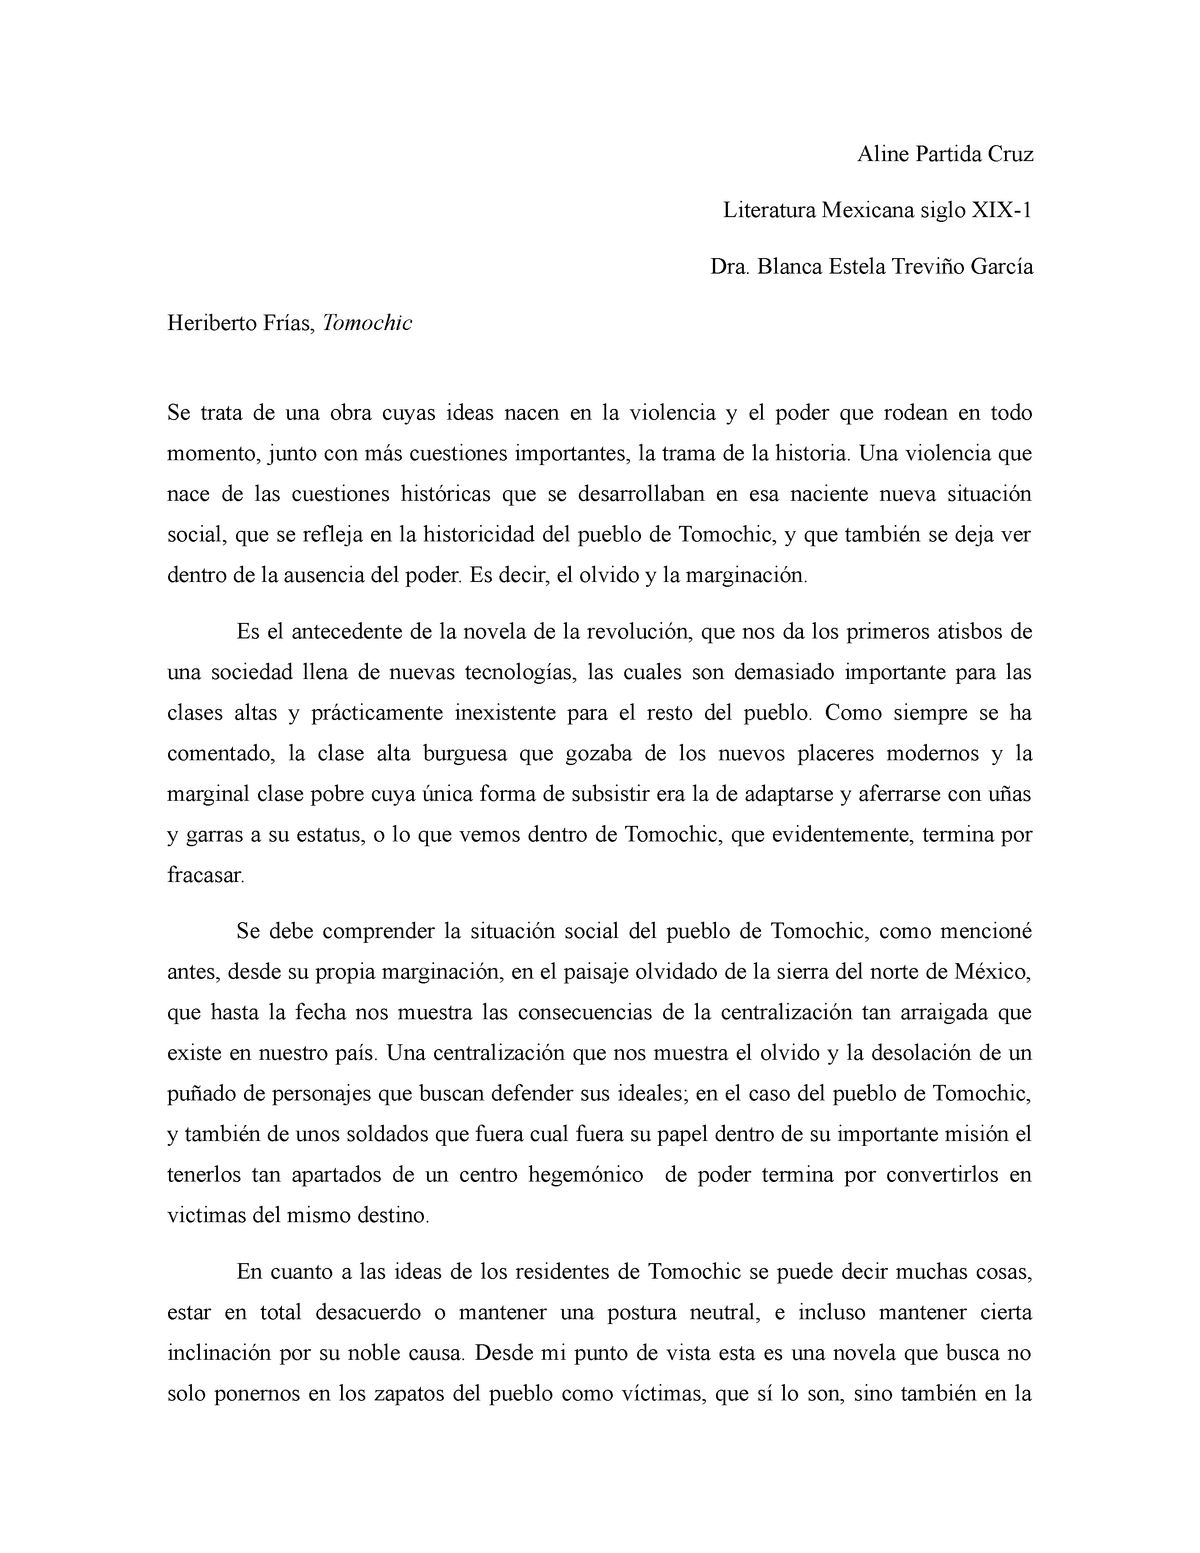 Ensayo Tomochic - Aline Partida Cruz Literatura Mexicana siglo XIX- Dra ...